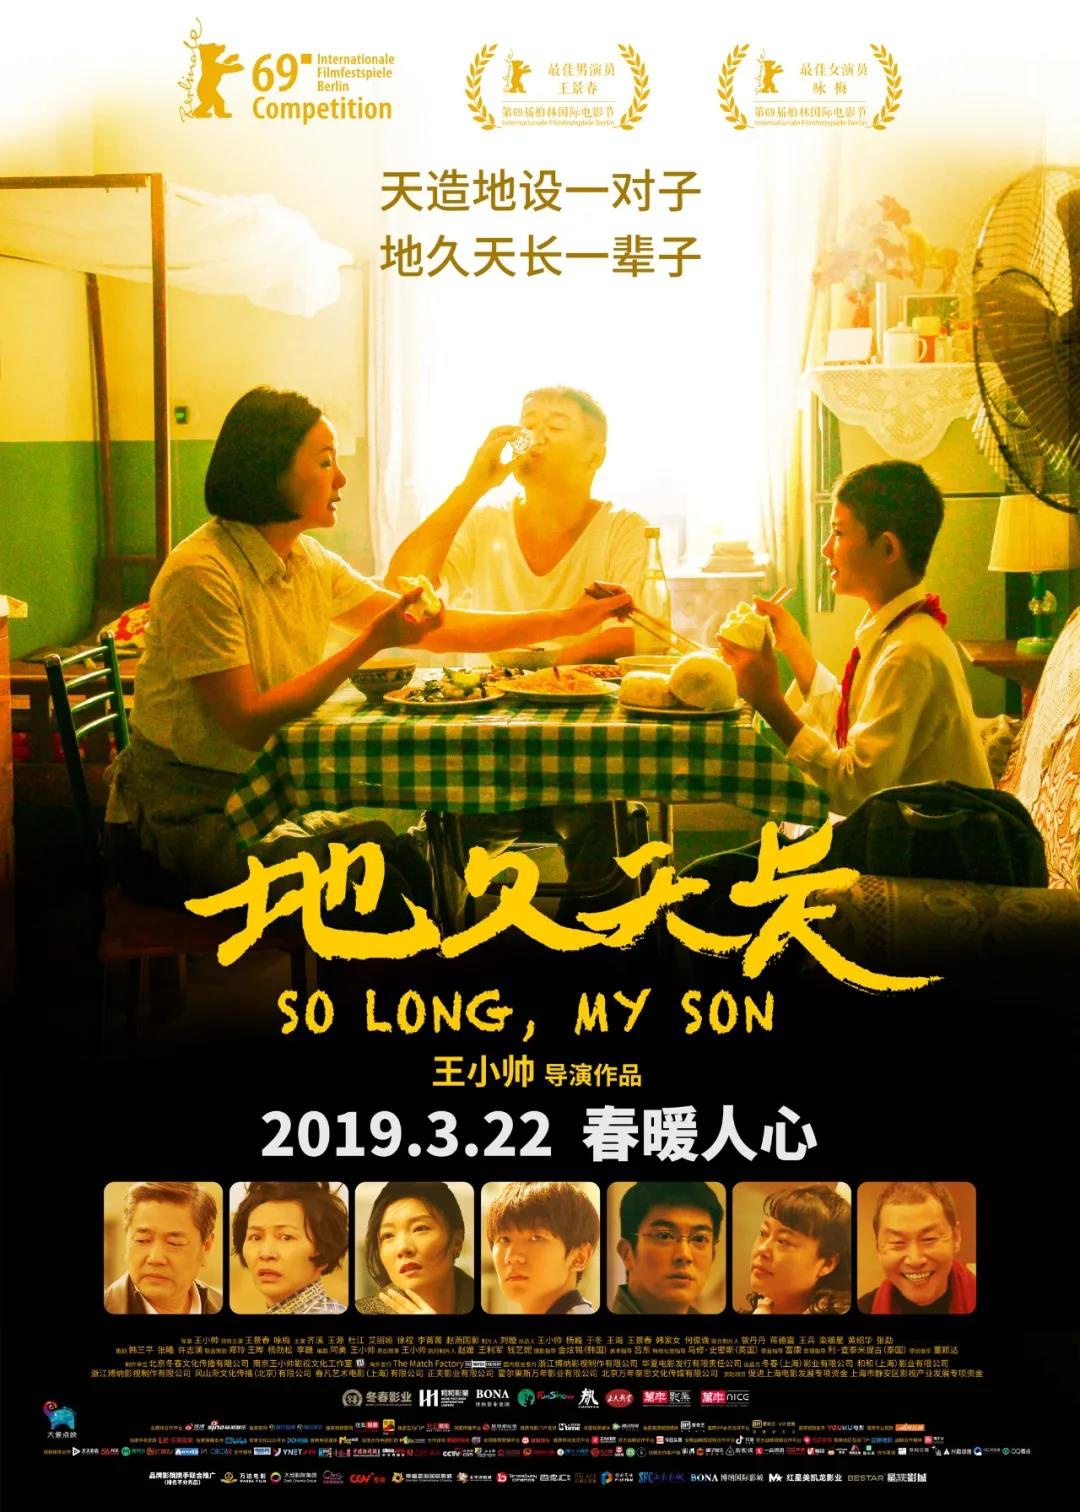 《我的姐姐》温情催泪 华语电影迎来“亲情大年”